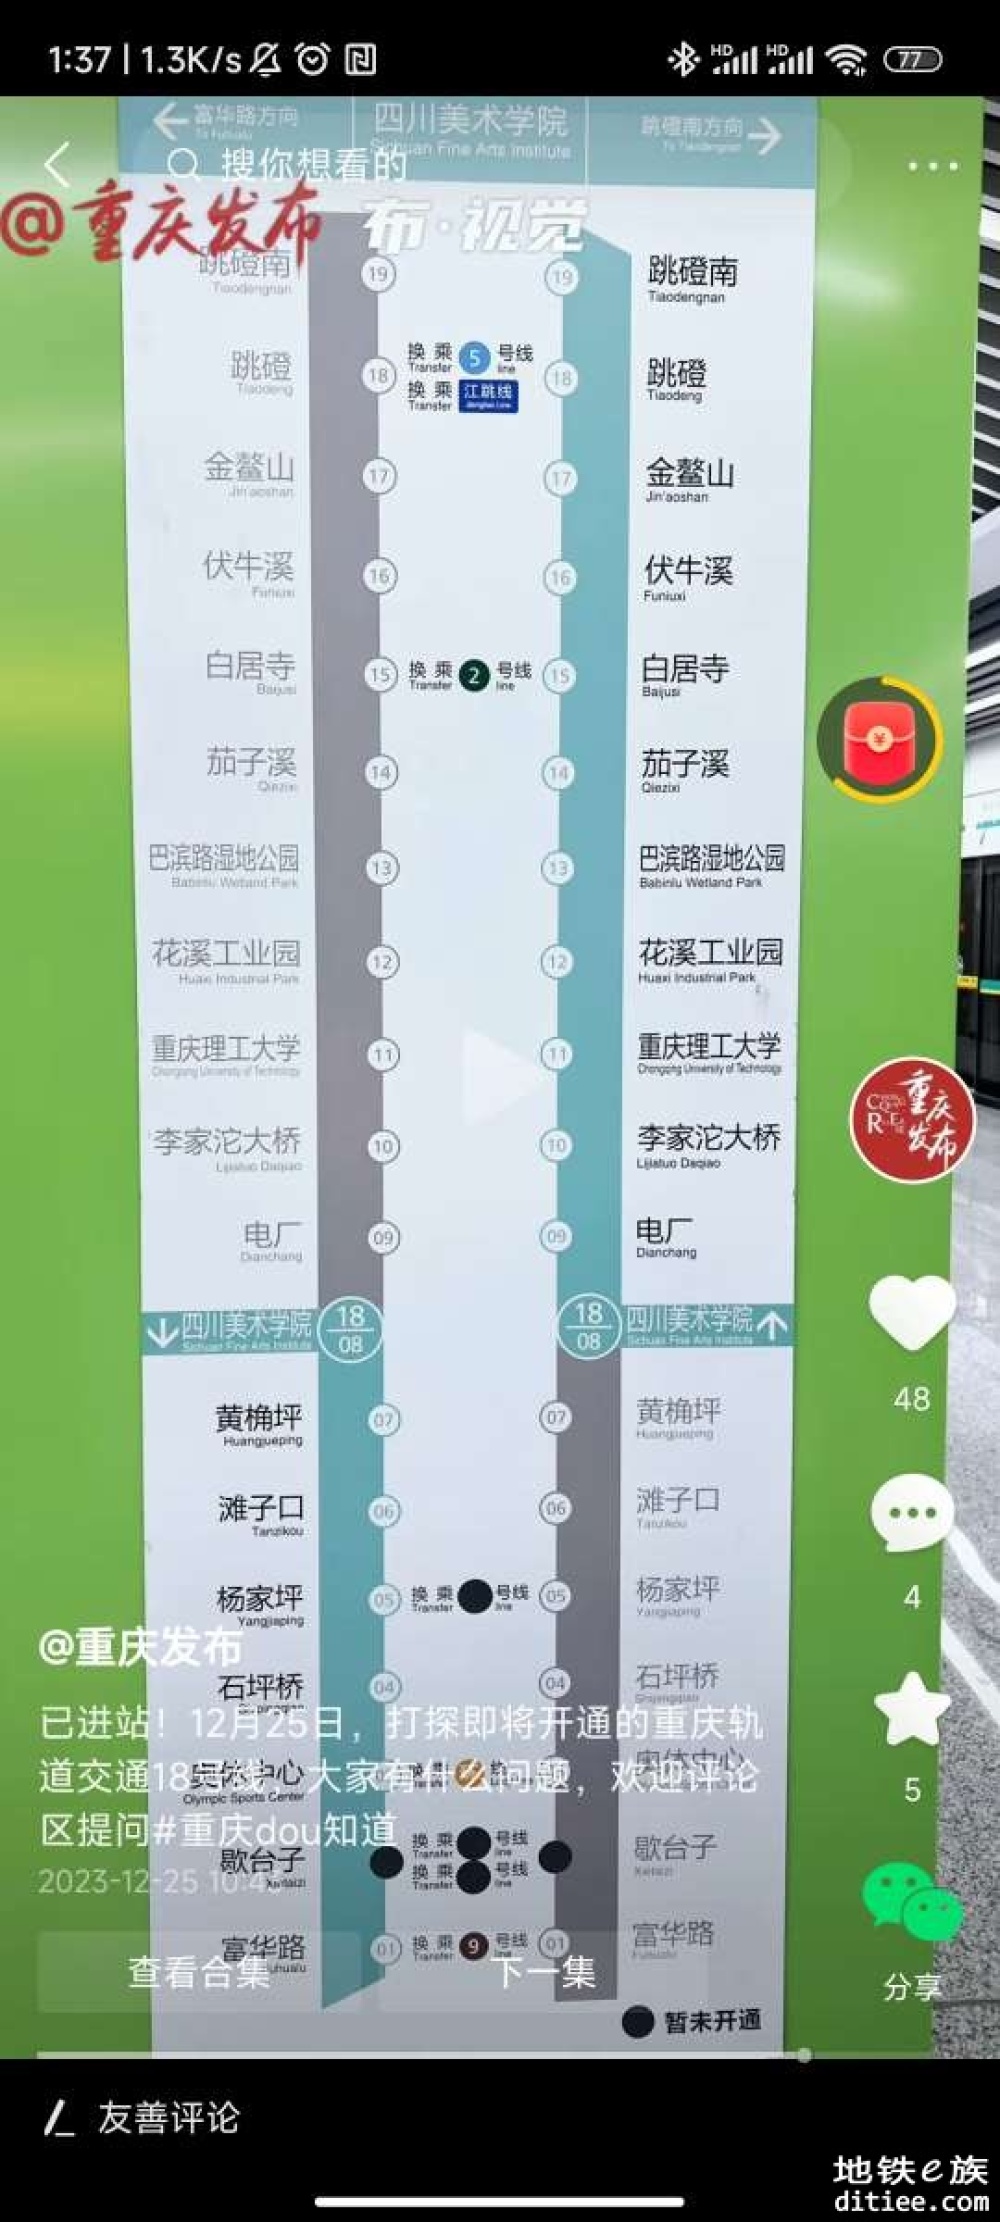 今天下午2点！重庆轨道交通18号线将开通初期运营